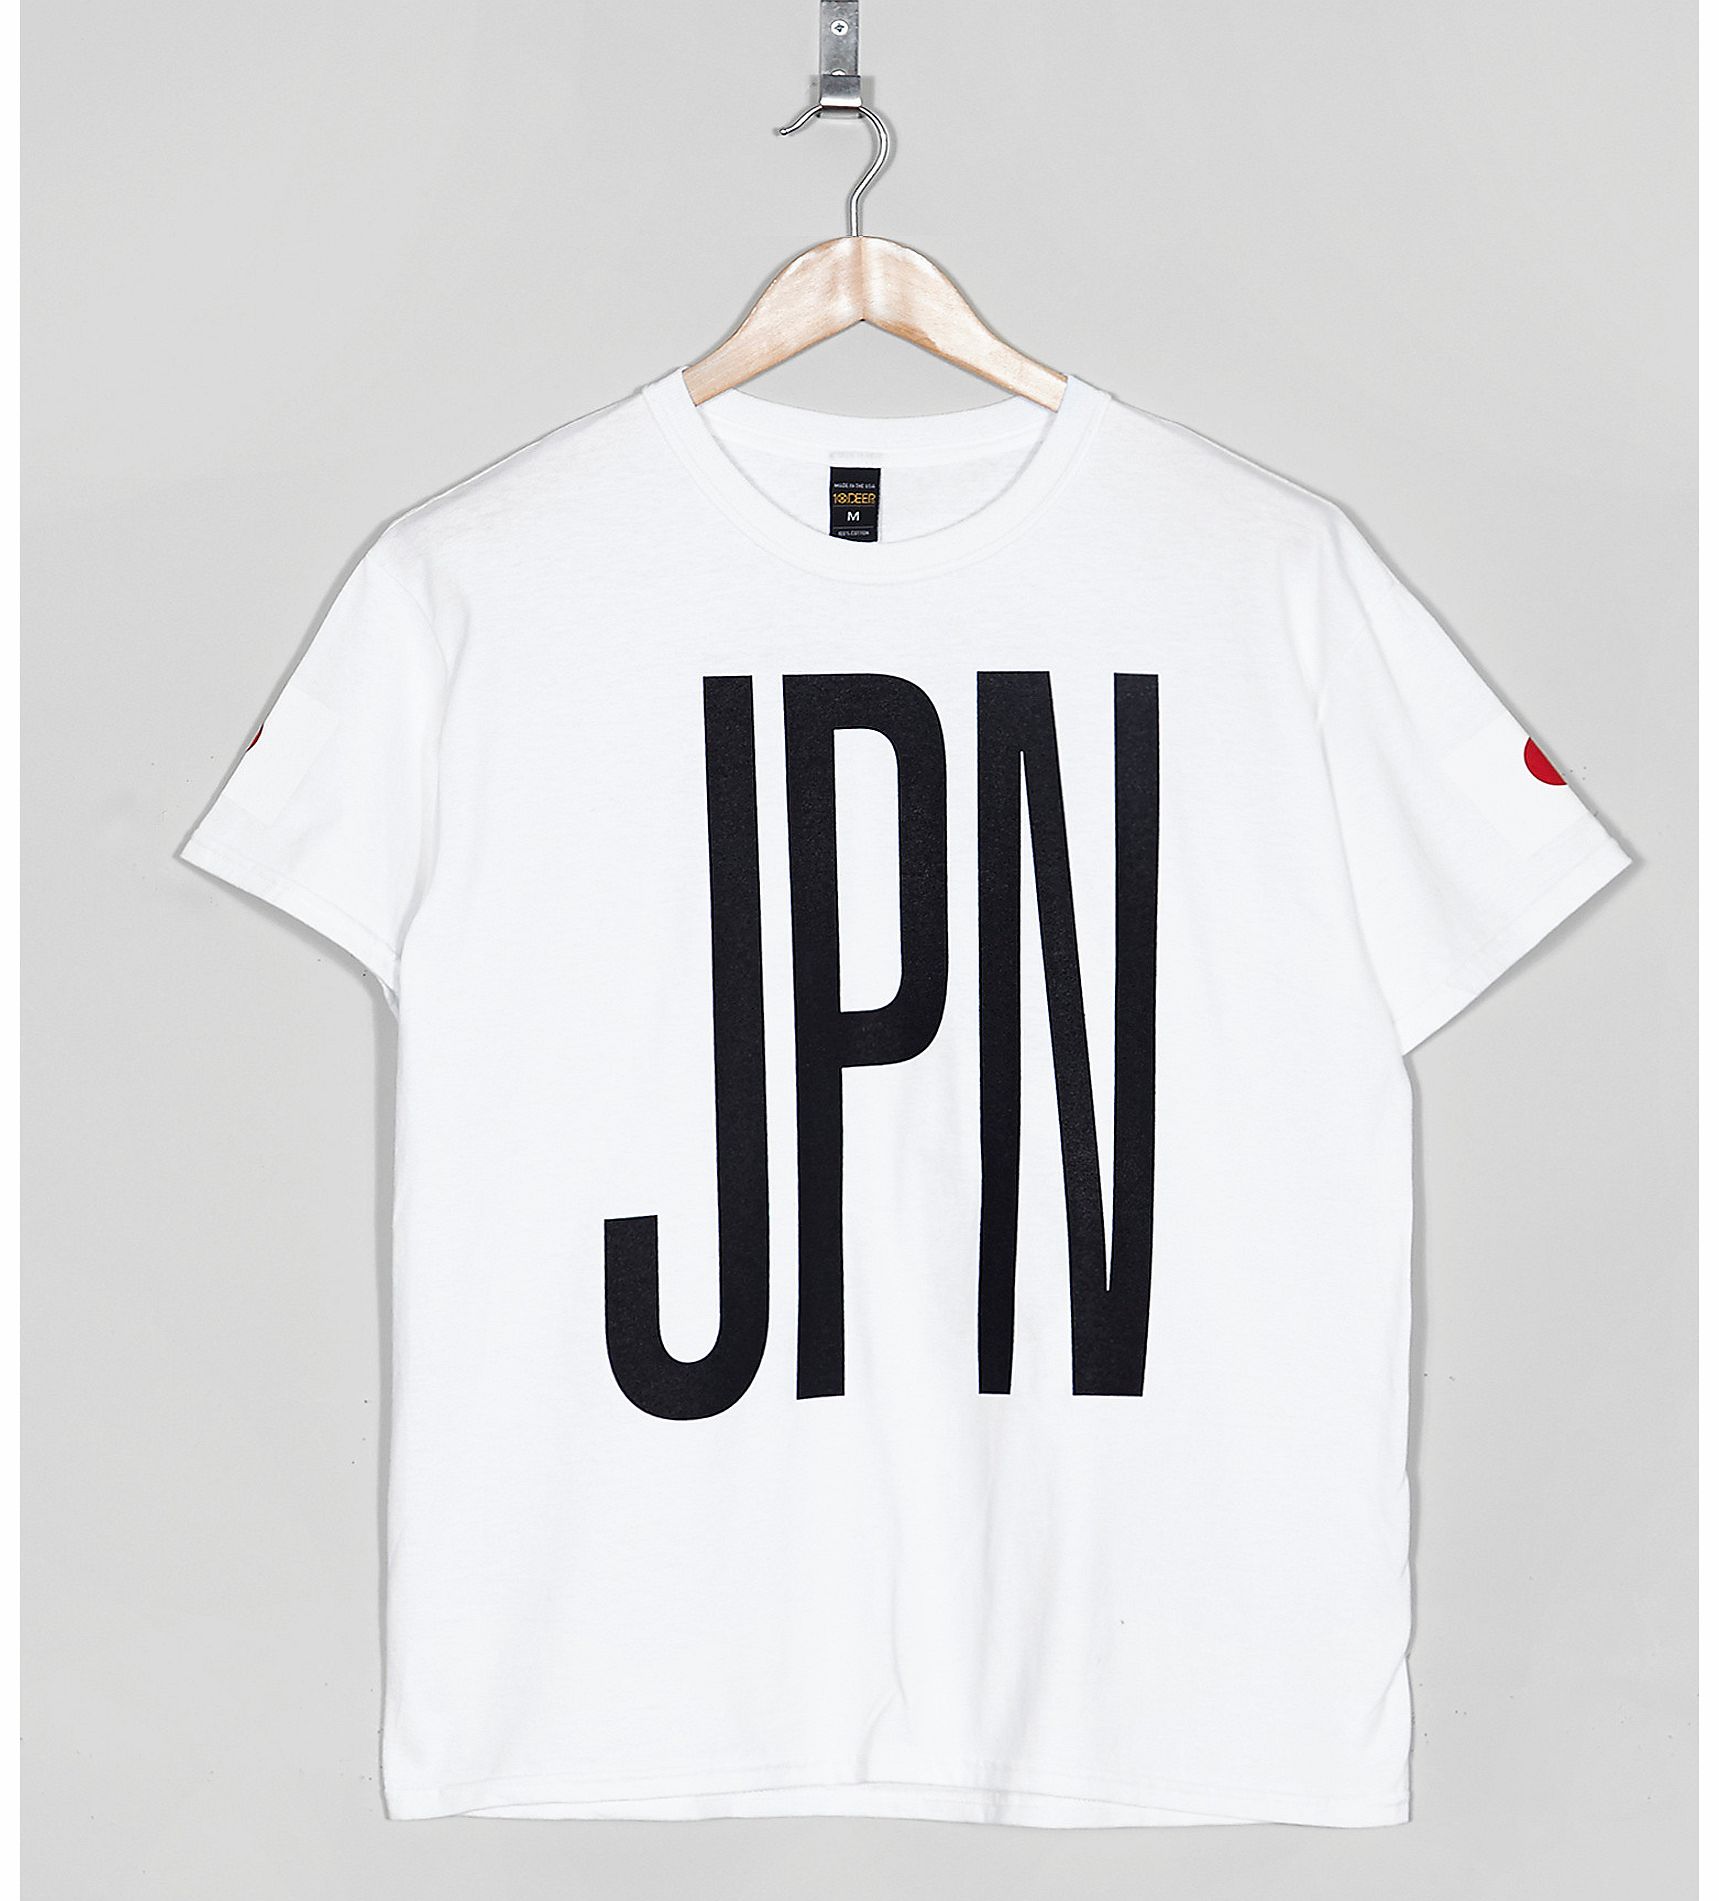 Japan 98 T-Shirt